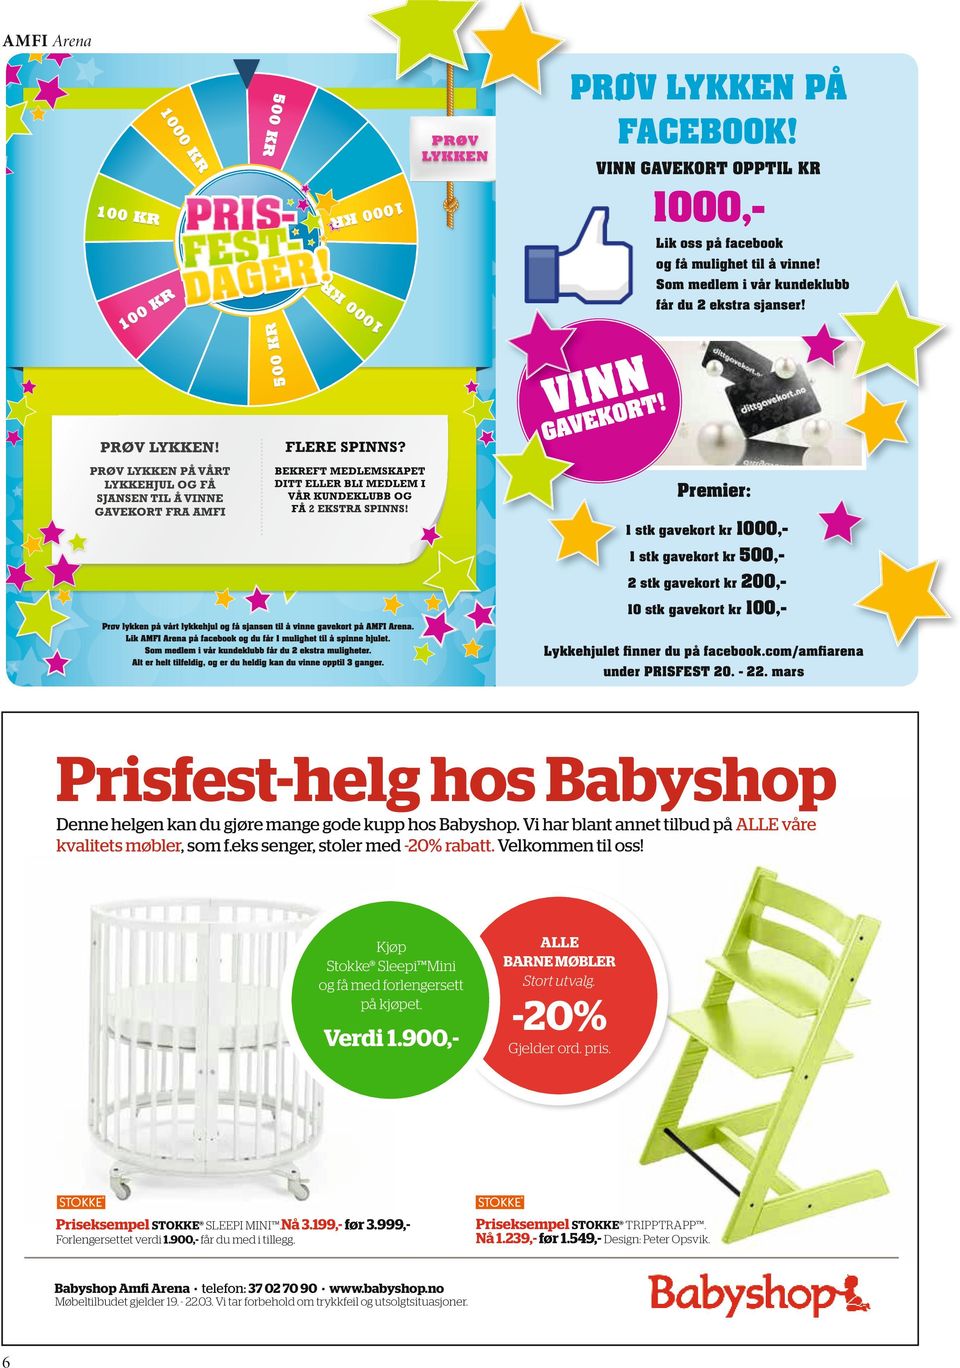 mars Prisfest-helg hos Babyshop Denne helgen kan du gjøre mange gode kupp hos Babyshop. Vi har blant annet tilbud på ALLE våre kvalitets møbler, som f.eks senger, stoler med -0% rabatt.